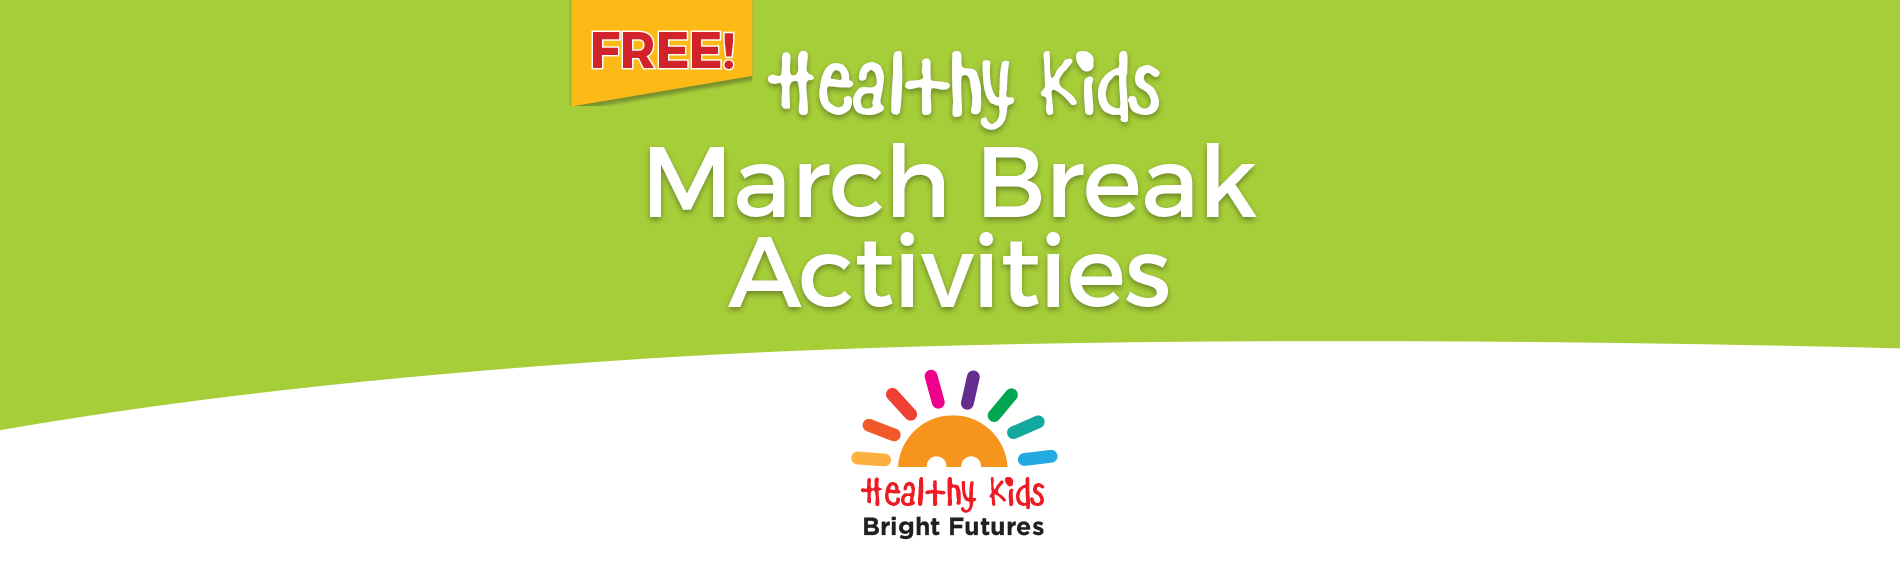 Healthy Kids March Break